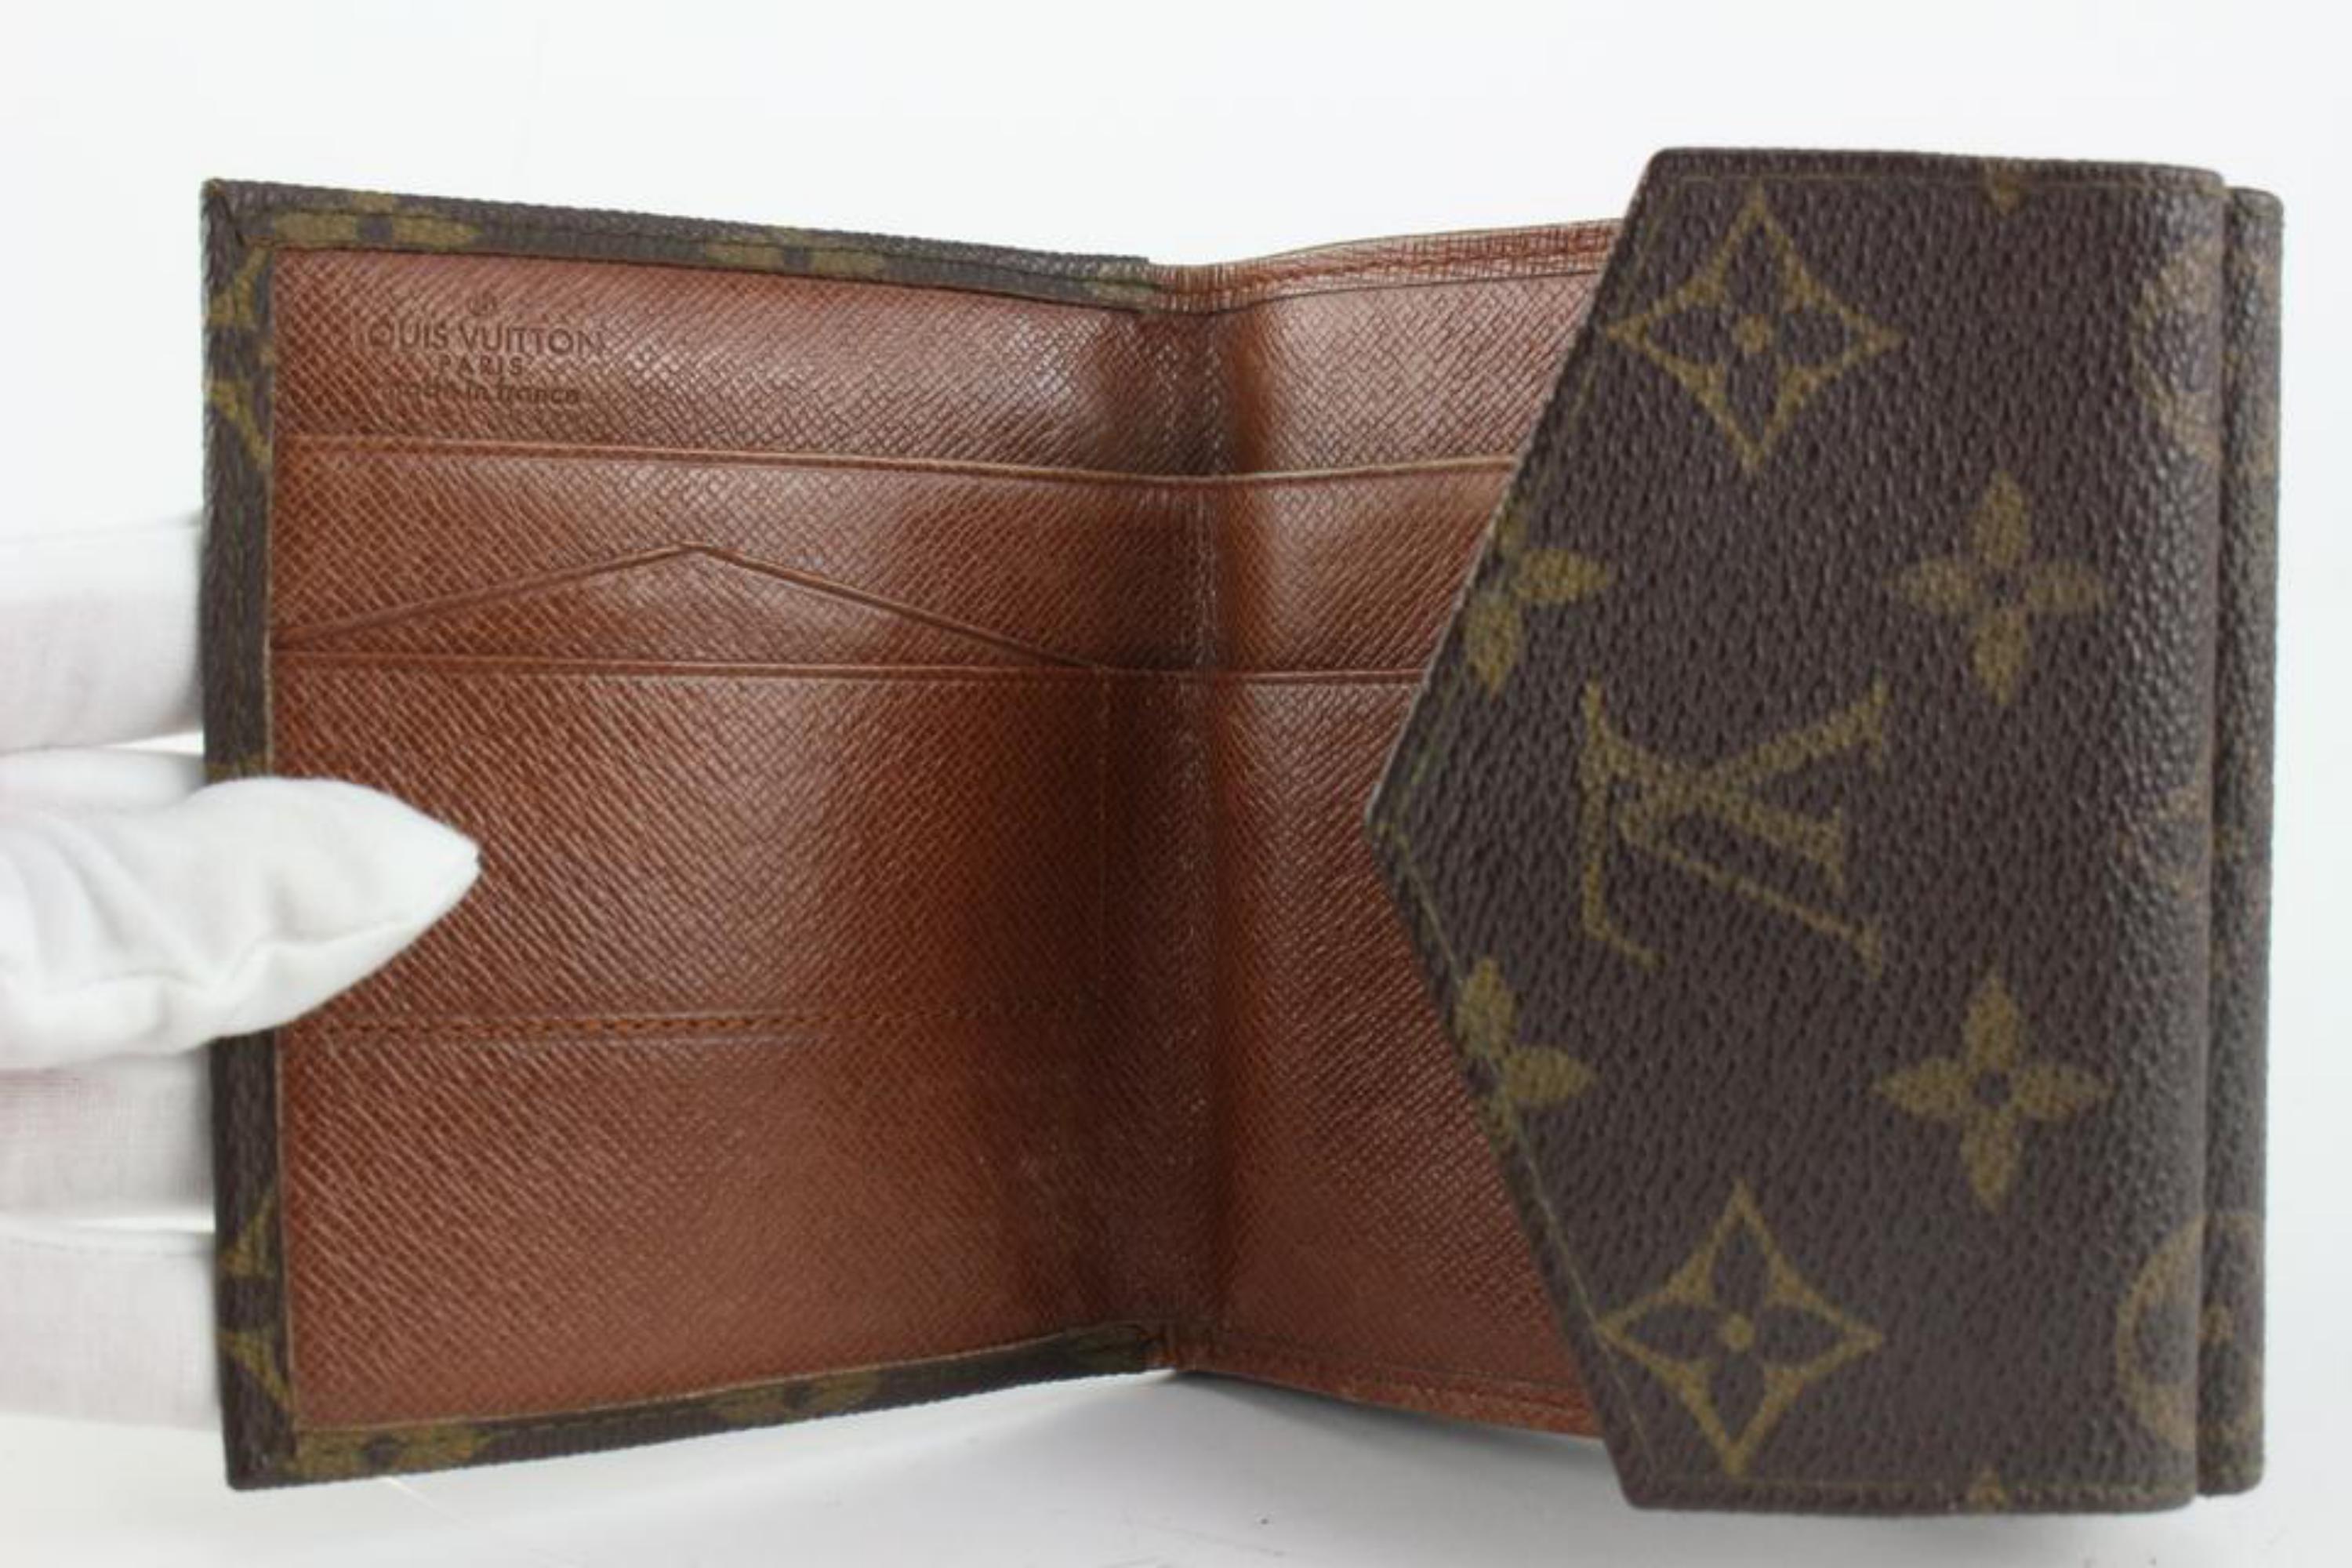 Black Louis Vuitton Monogram Elise Compact Wallet 1217lv21 For Sale